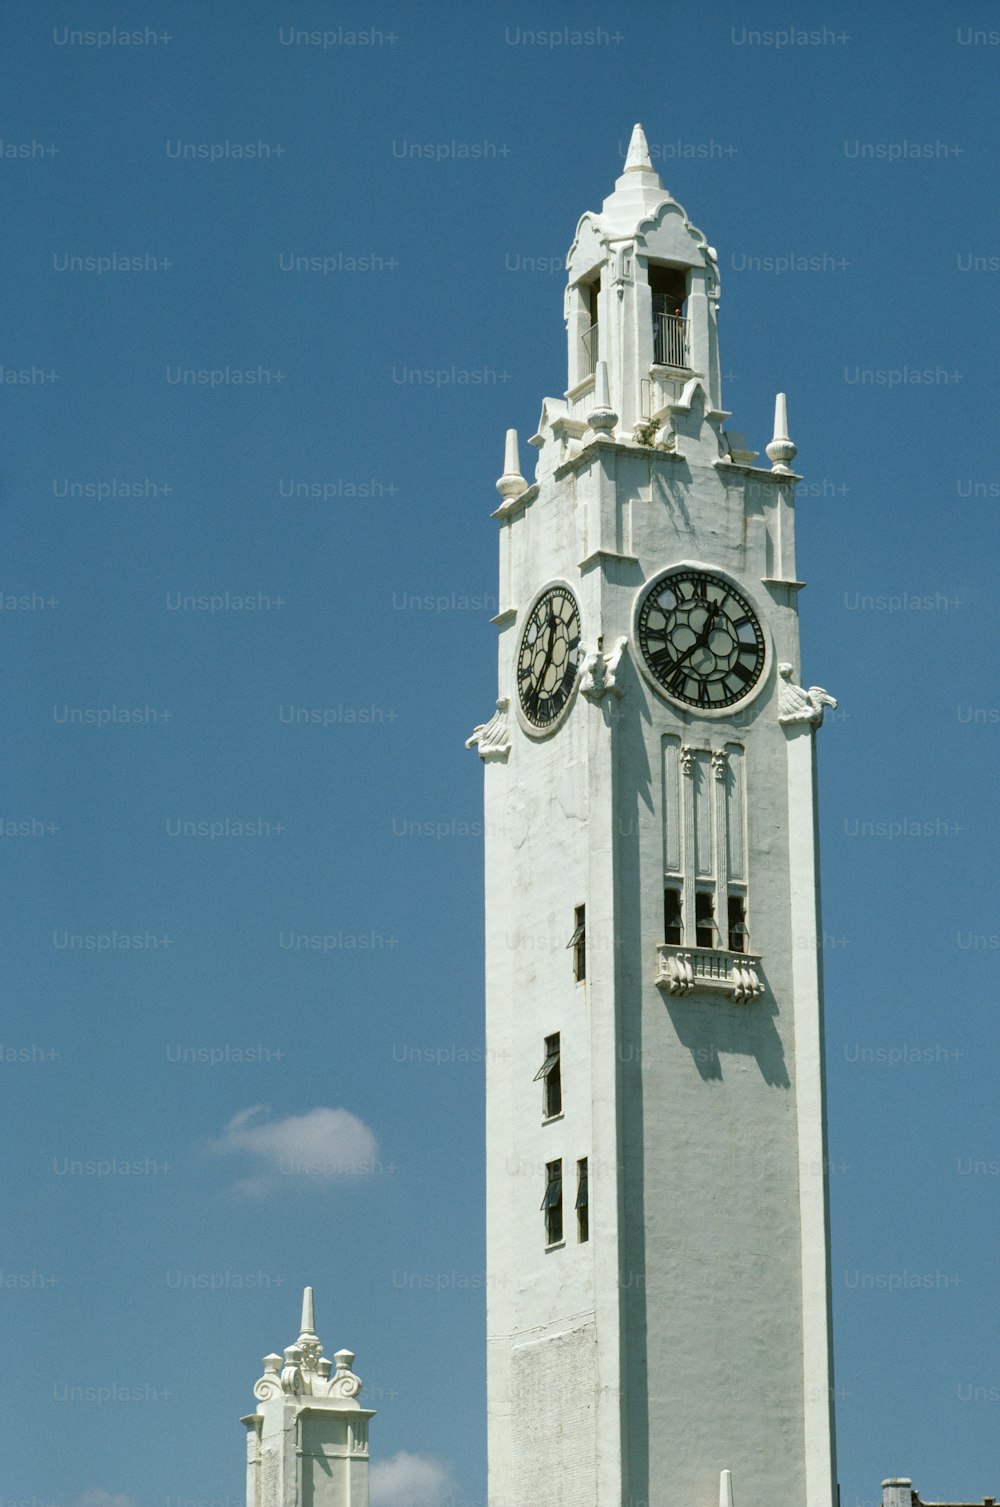 양쪽에 시계가 있는 키가 큰 흰색 시계탑